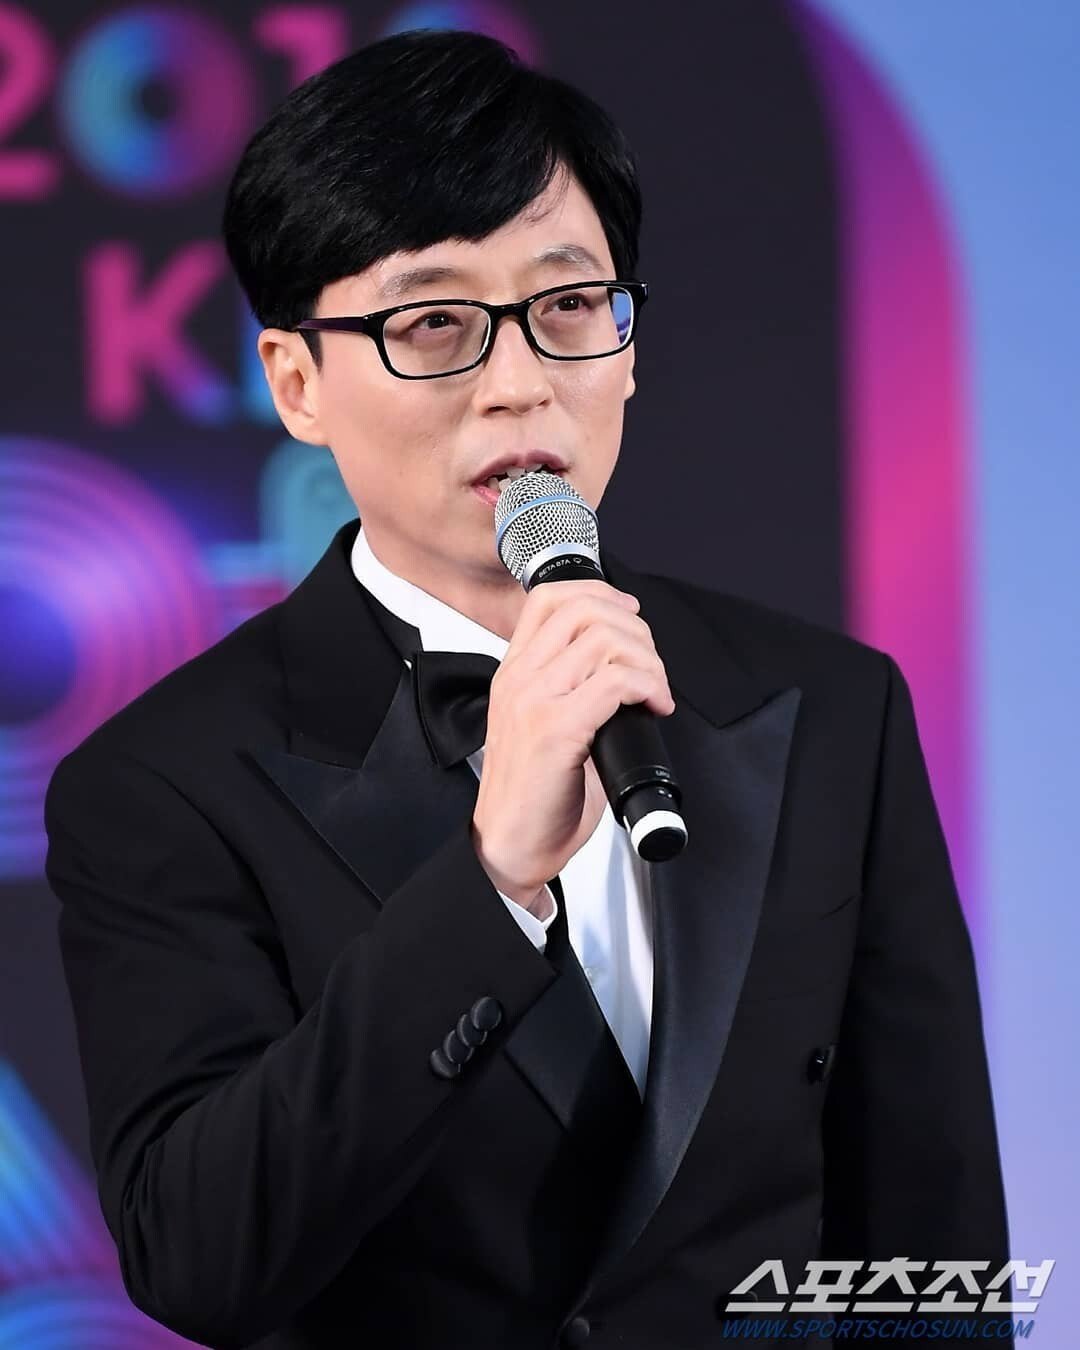 Bên cạnh là MC hàng đầu Hàn Quốc, Yoo Jae Suk còn là người được nhiều đồng nghiệp nể trọng